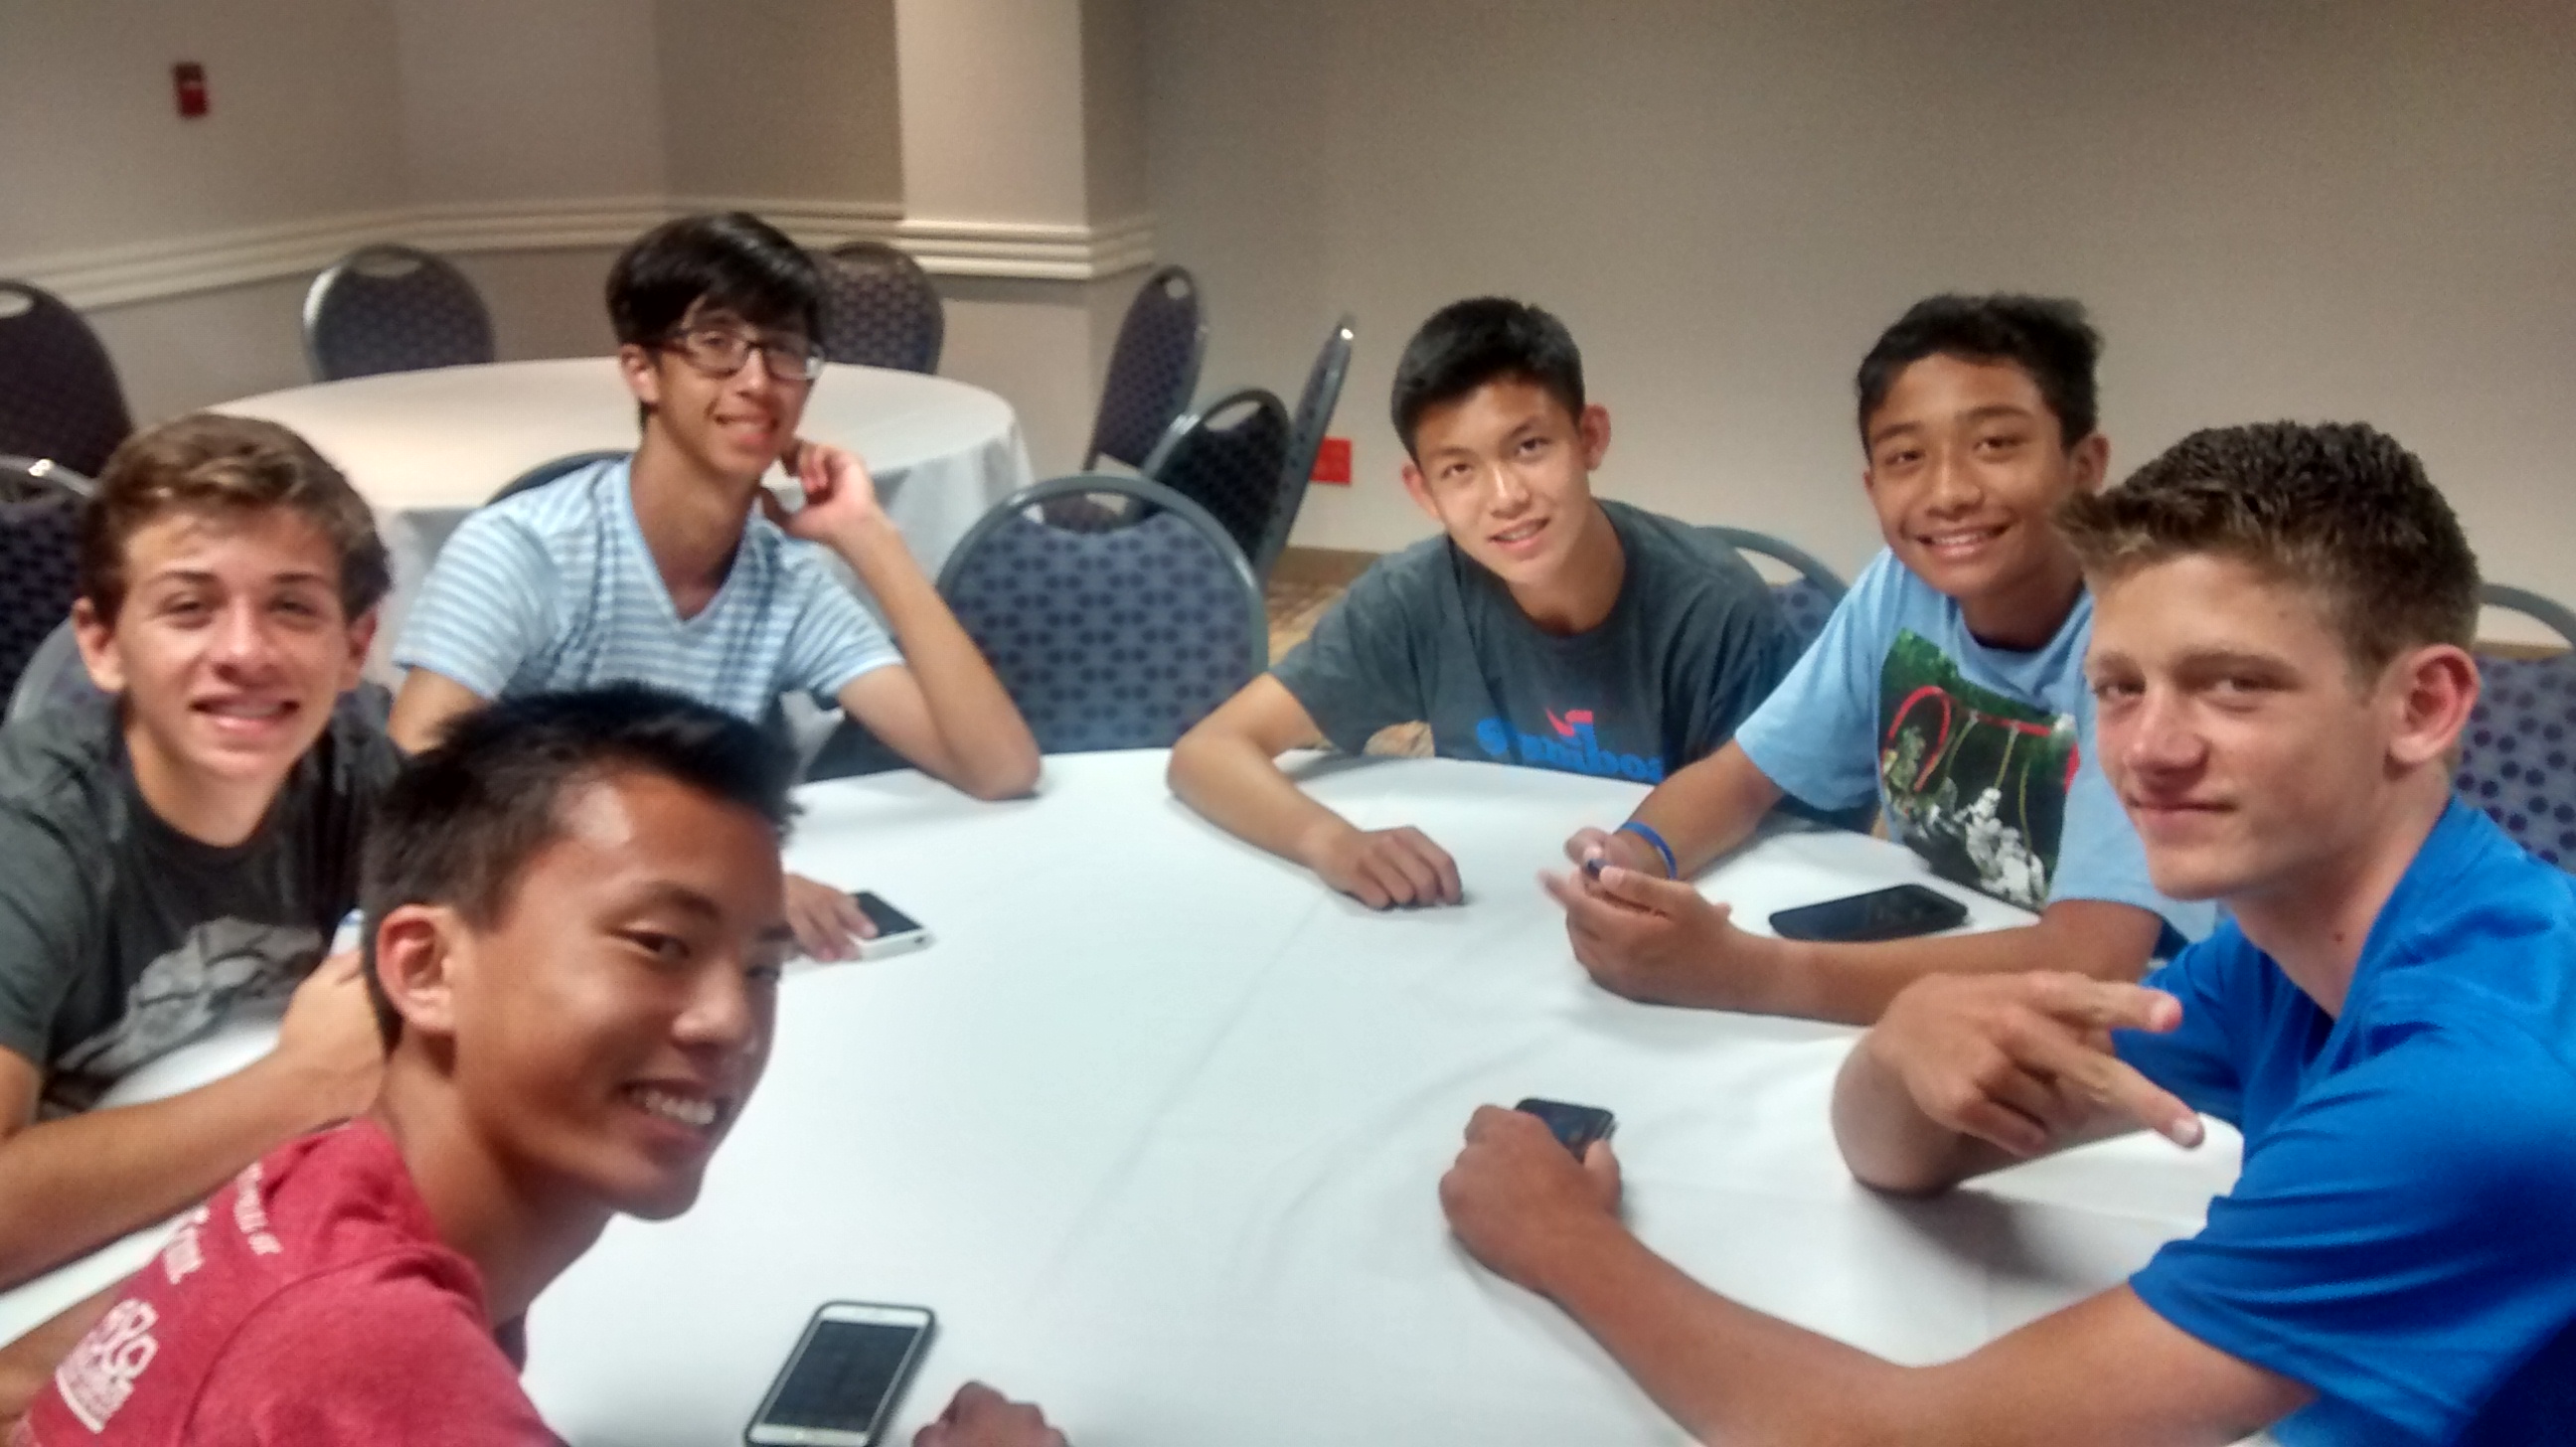 2015-09-19 - Guys at dinner